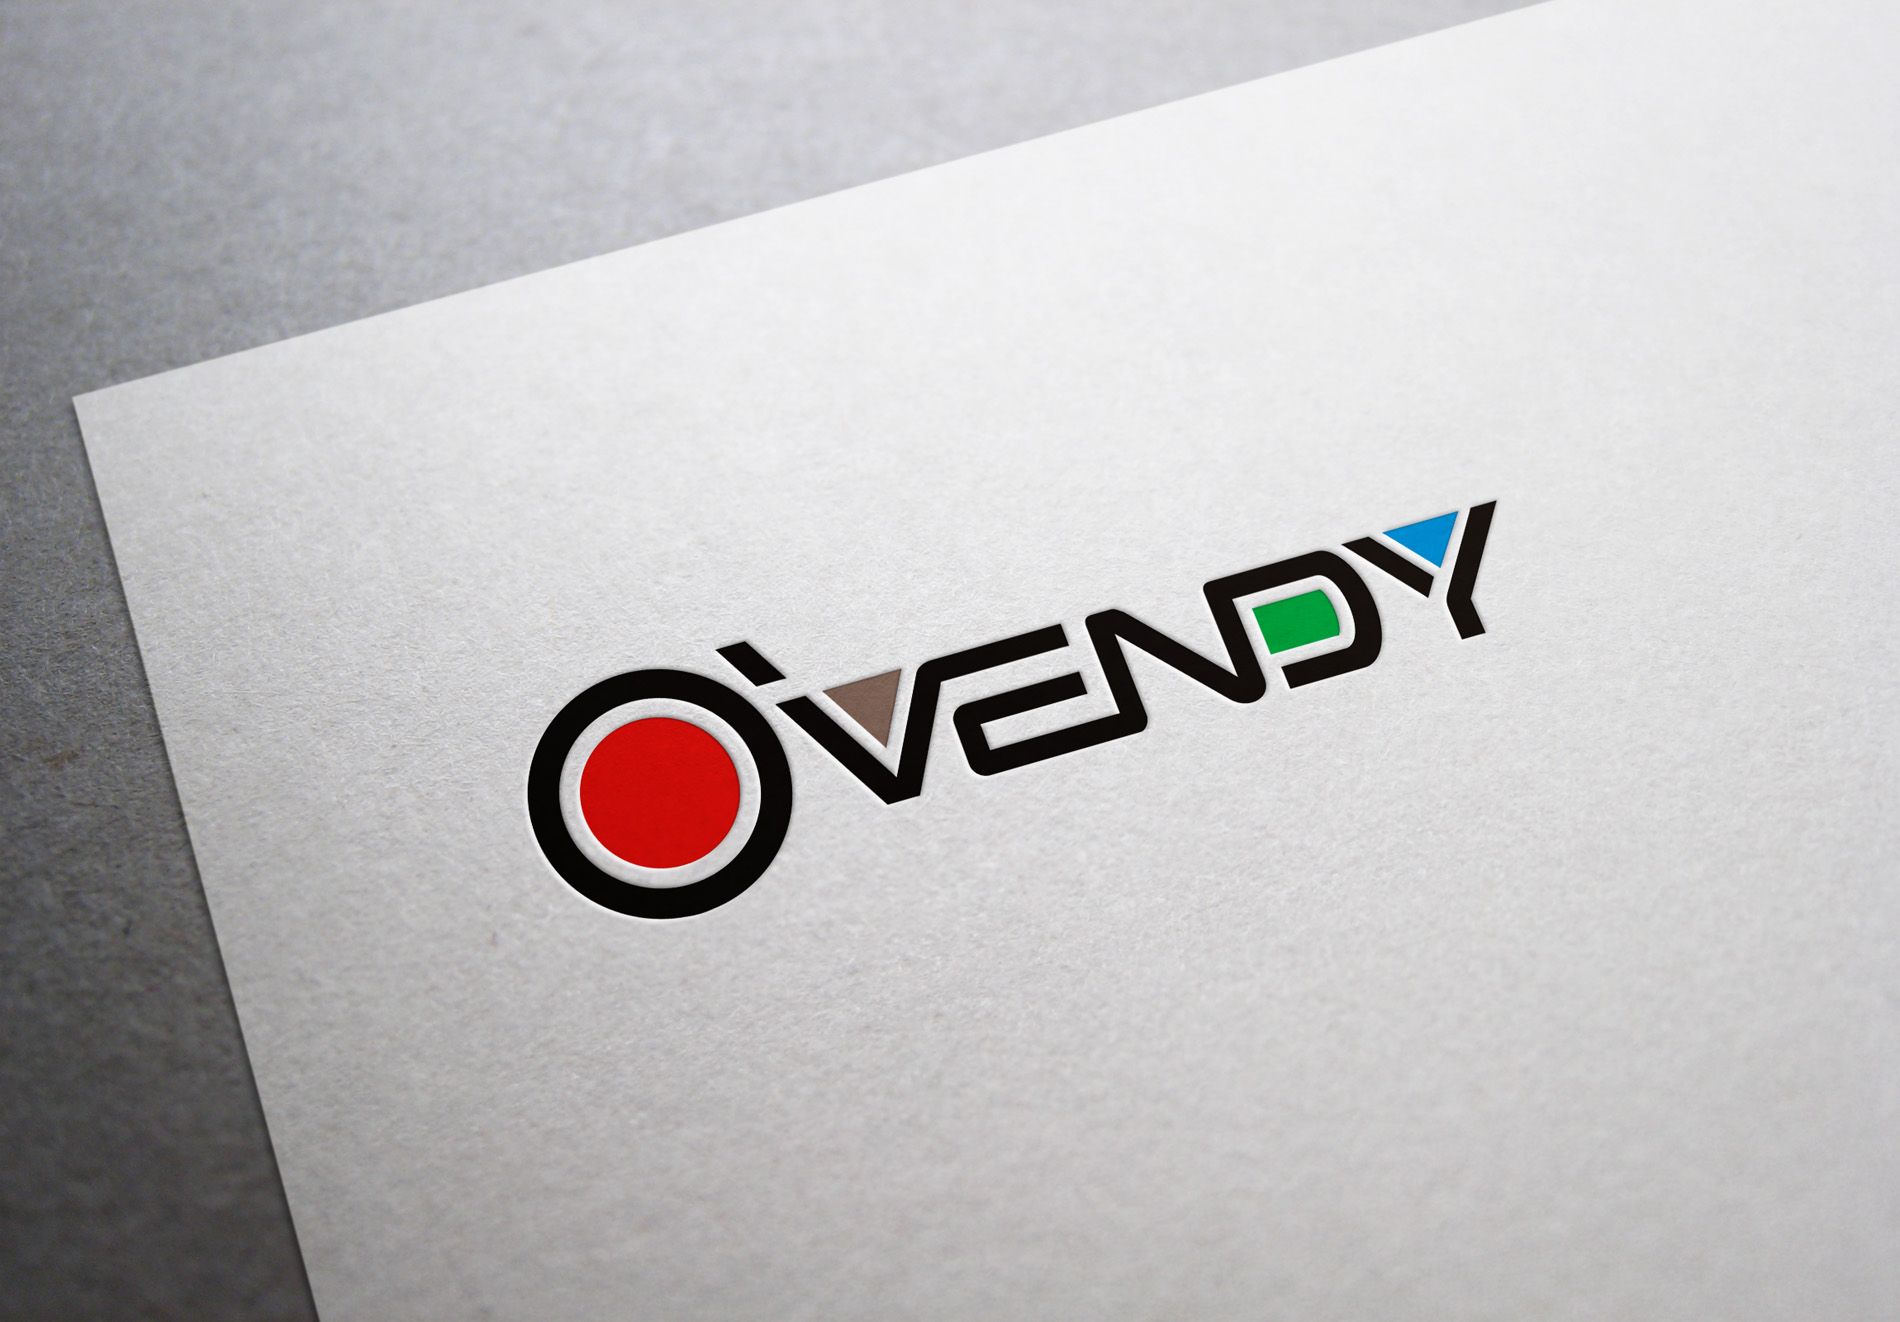 Лого и фирменный стиль для О'Венди/O'Vendy - дизайнер Zheravin